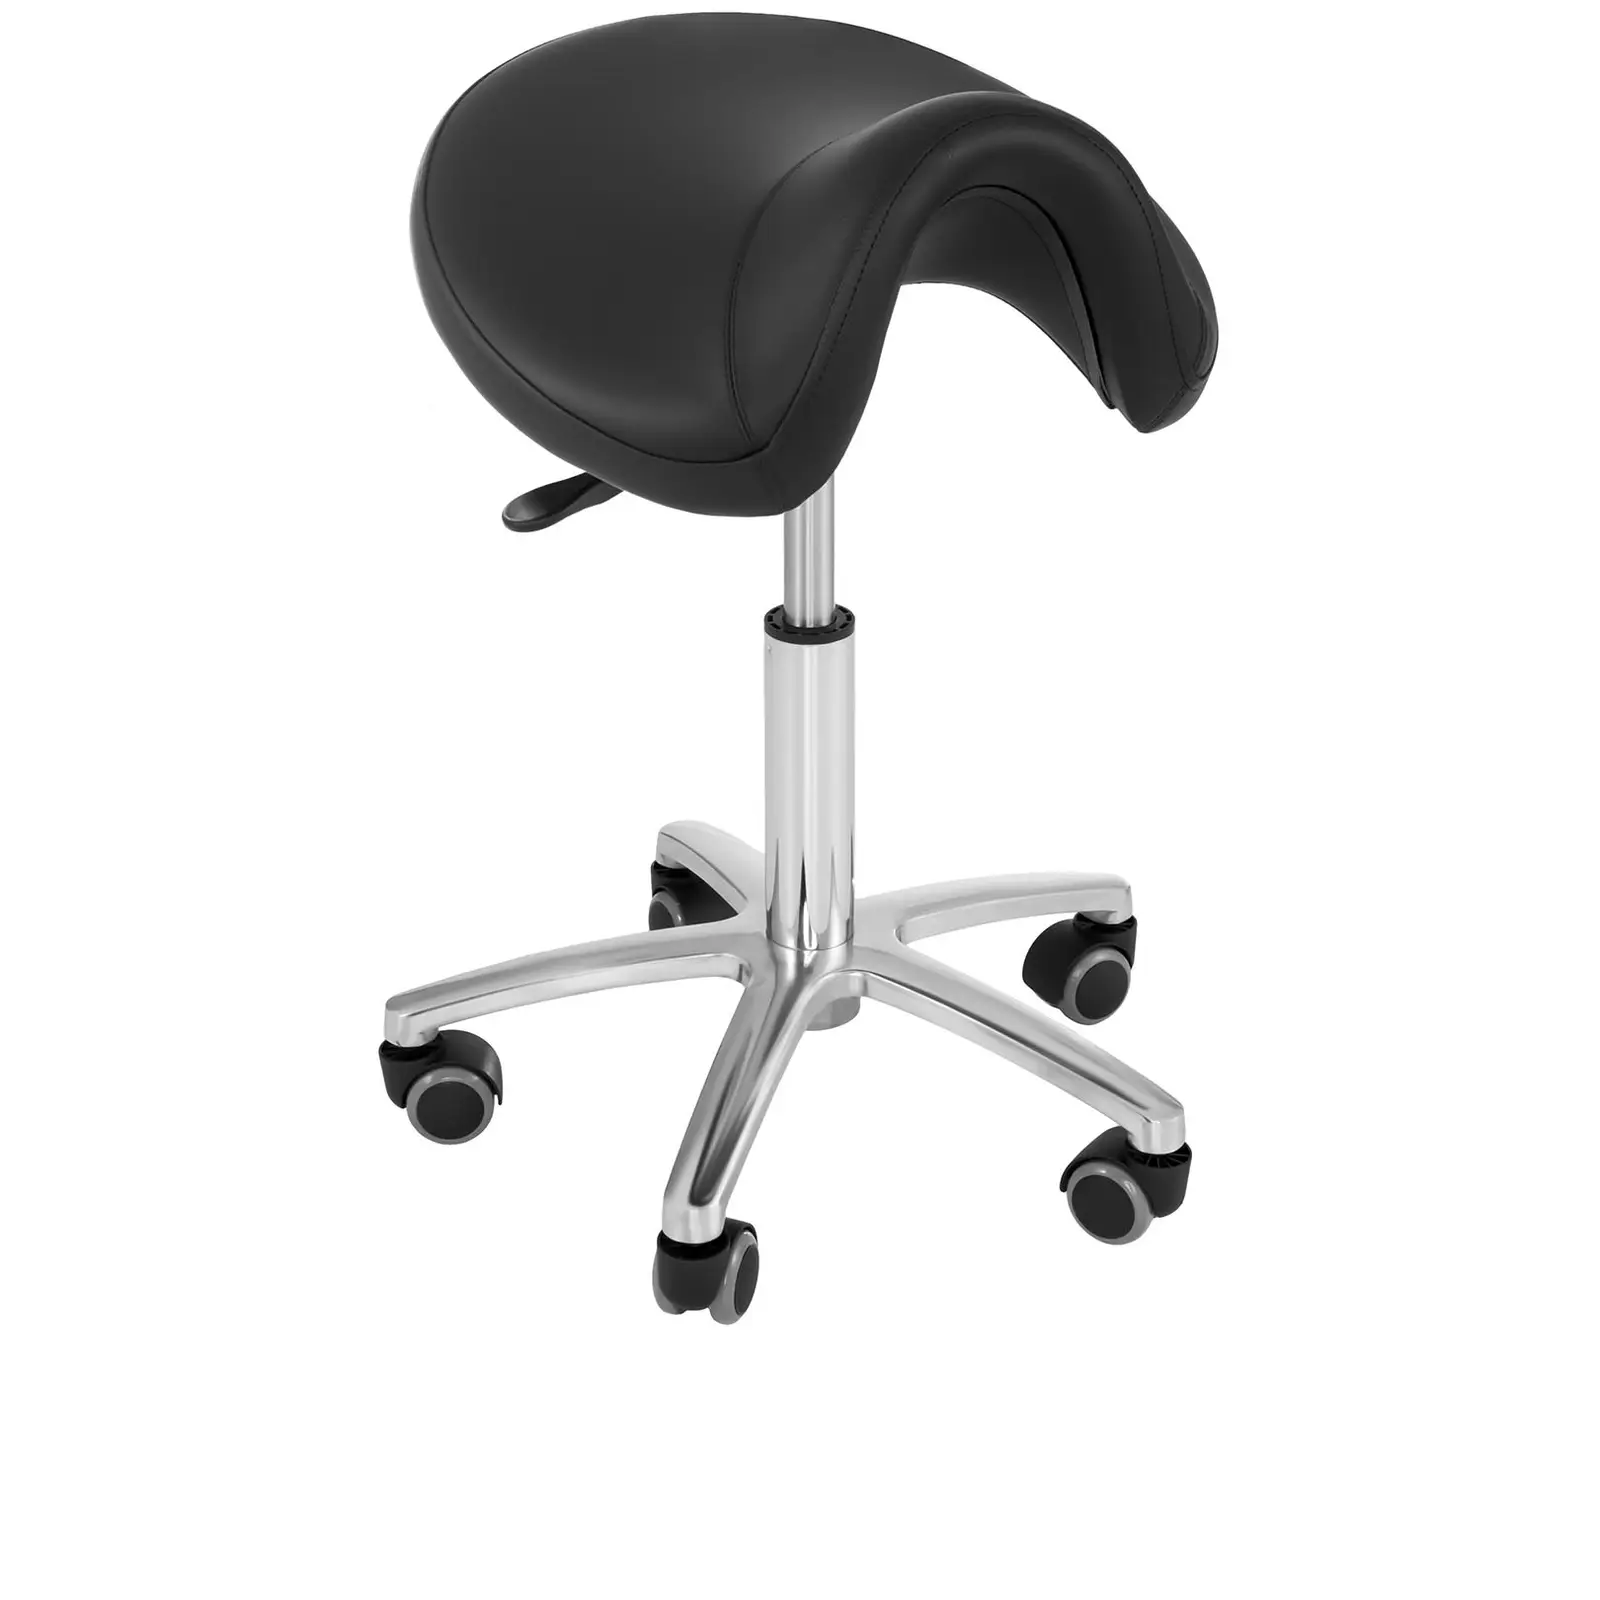 Fodrász szék - 480-625 mm - 150 kg - Fekete